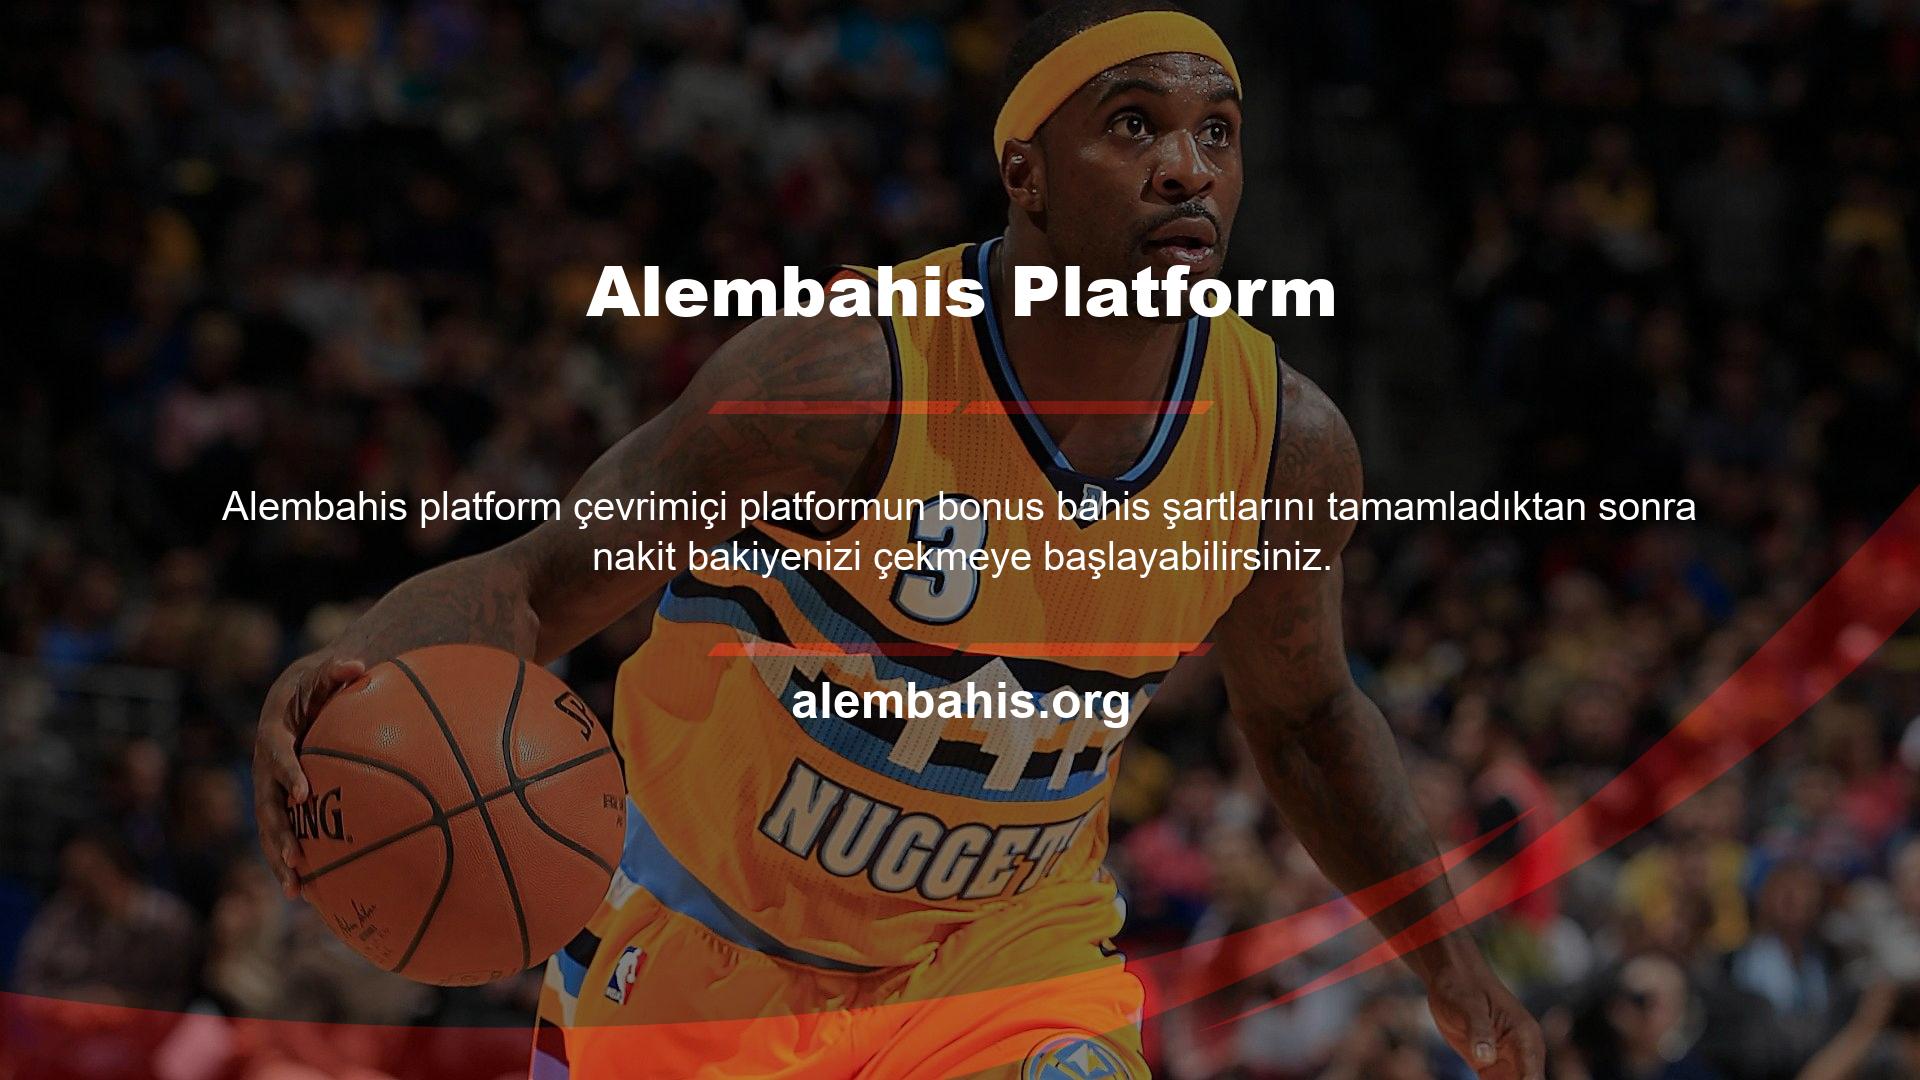 Alembahis iletişim becerilerini öne çıkaran ve bu kanalları zenginleştiren bir platformdur